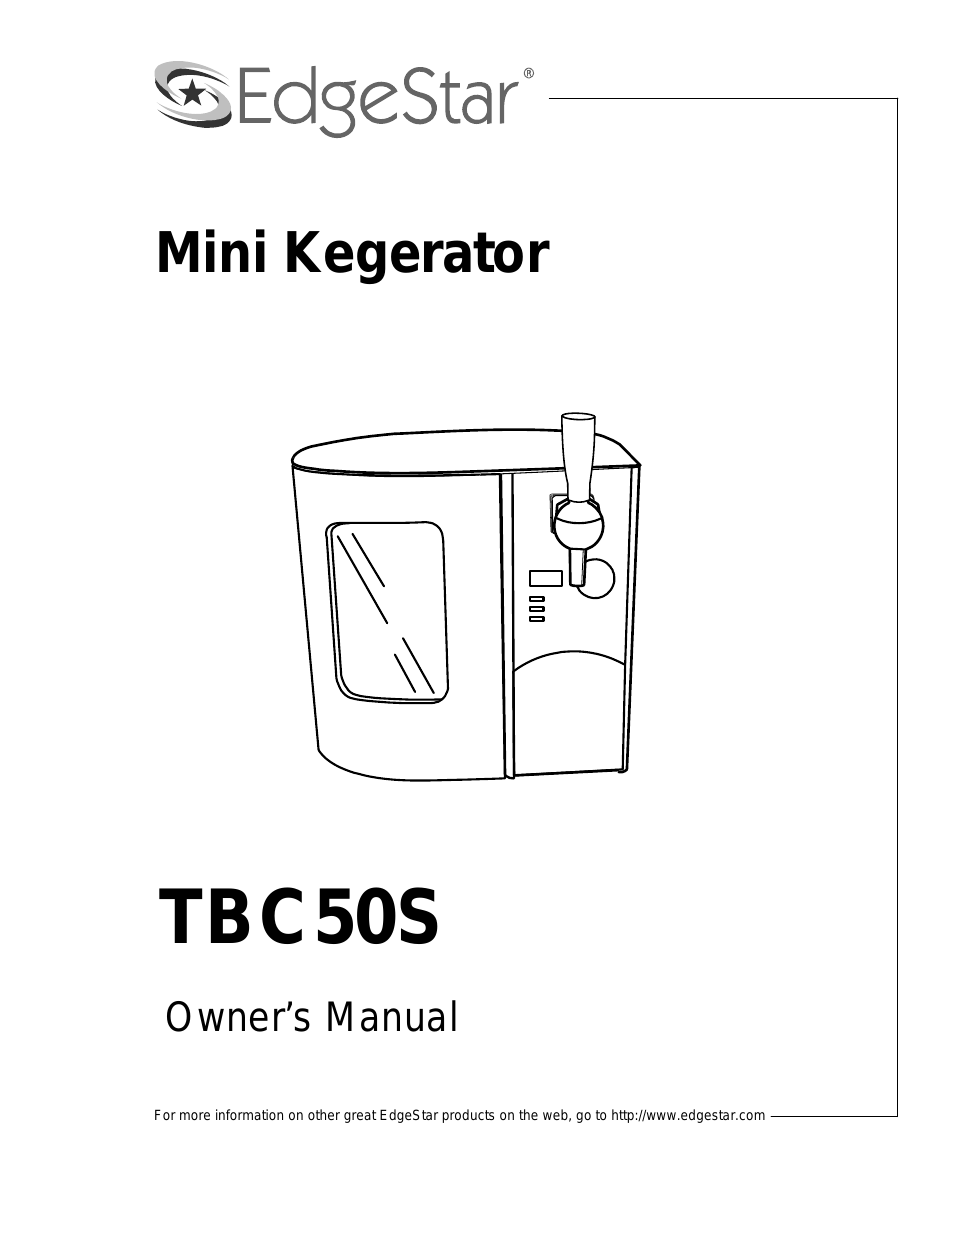 MINI KEGERATOR TBC50S